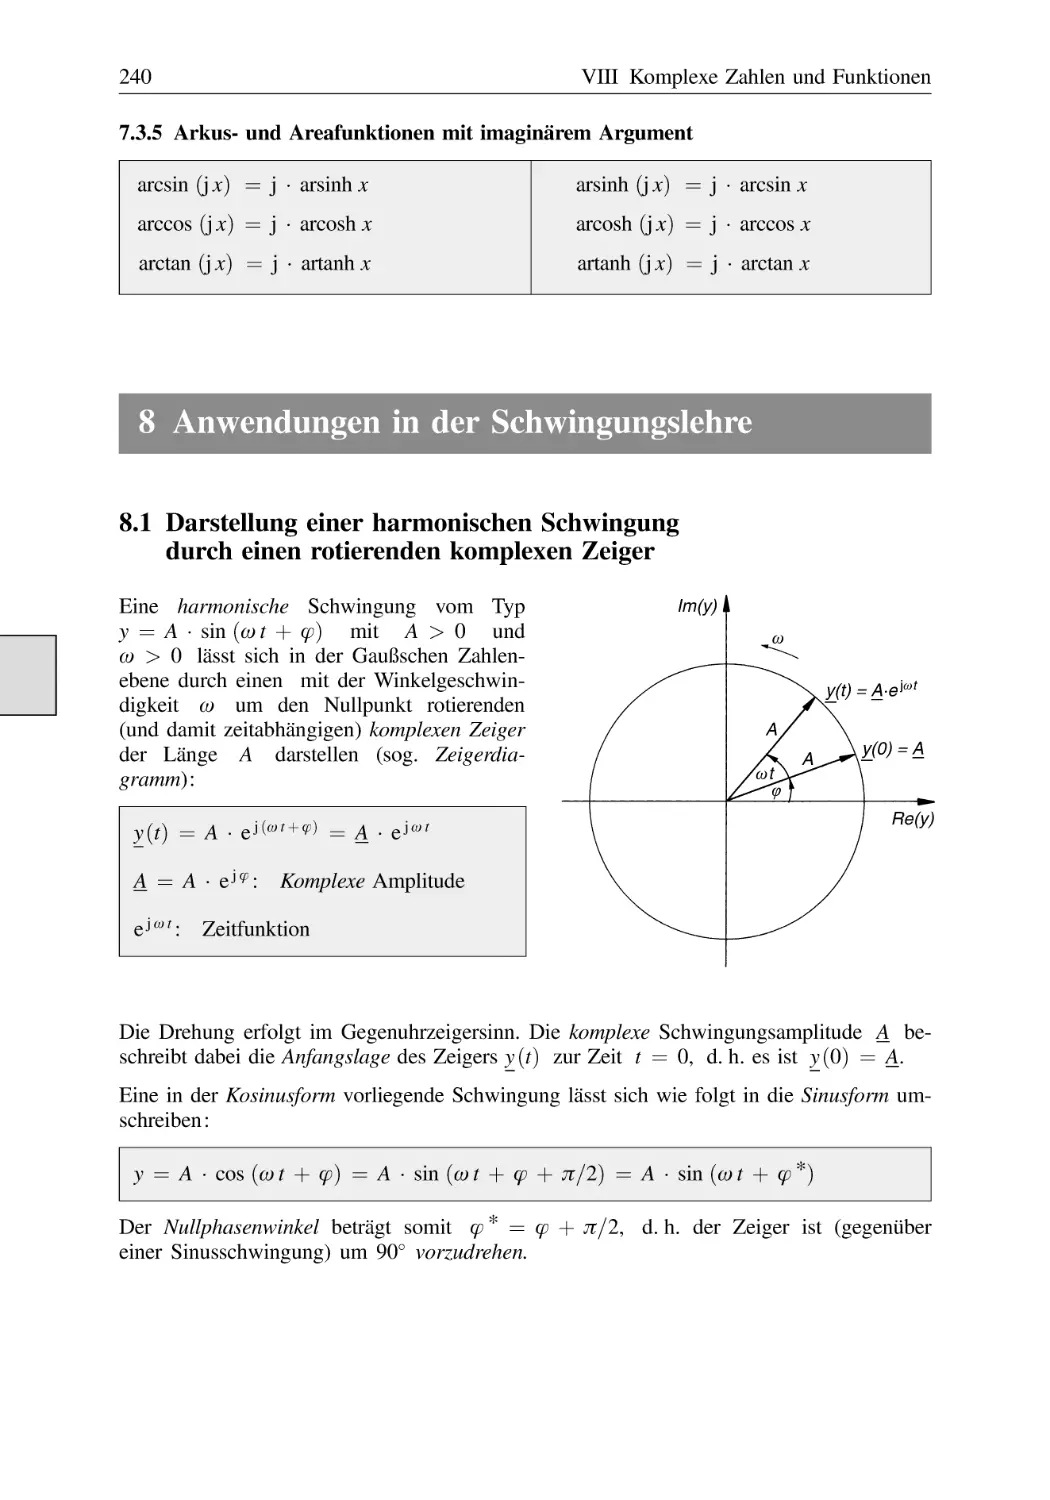 7.3.5 Arkus- und Areafunktionen mit imaginärem Argument
8 Anwendungen in der Schwingungslehre
8.1 Darstellung einer harmonischen Schwingung durch einen rotierenden komplexen Zeiger